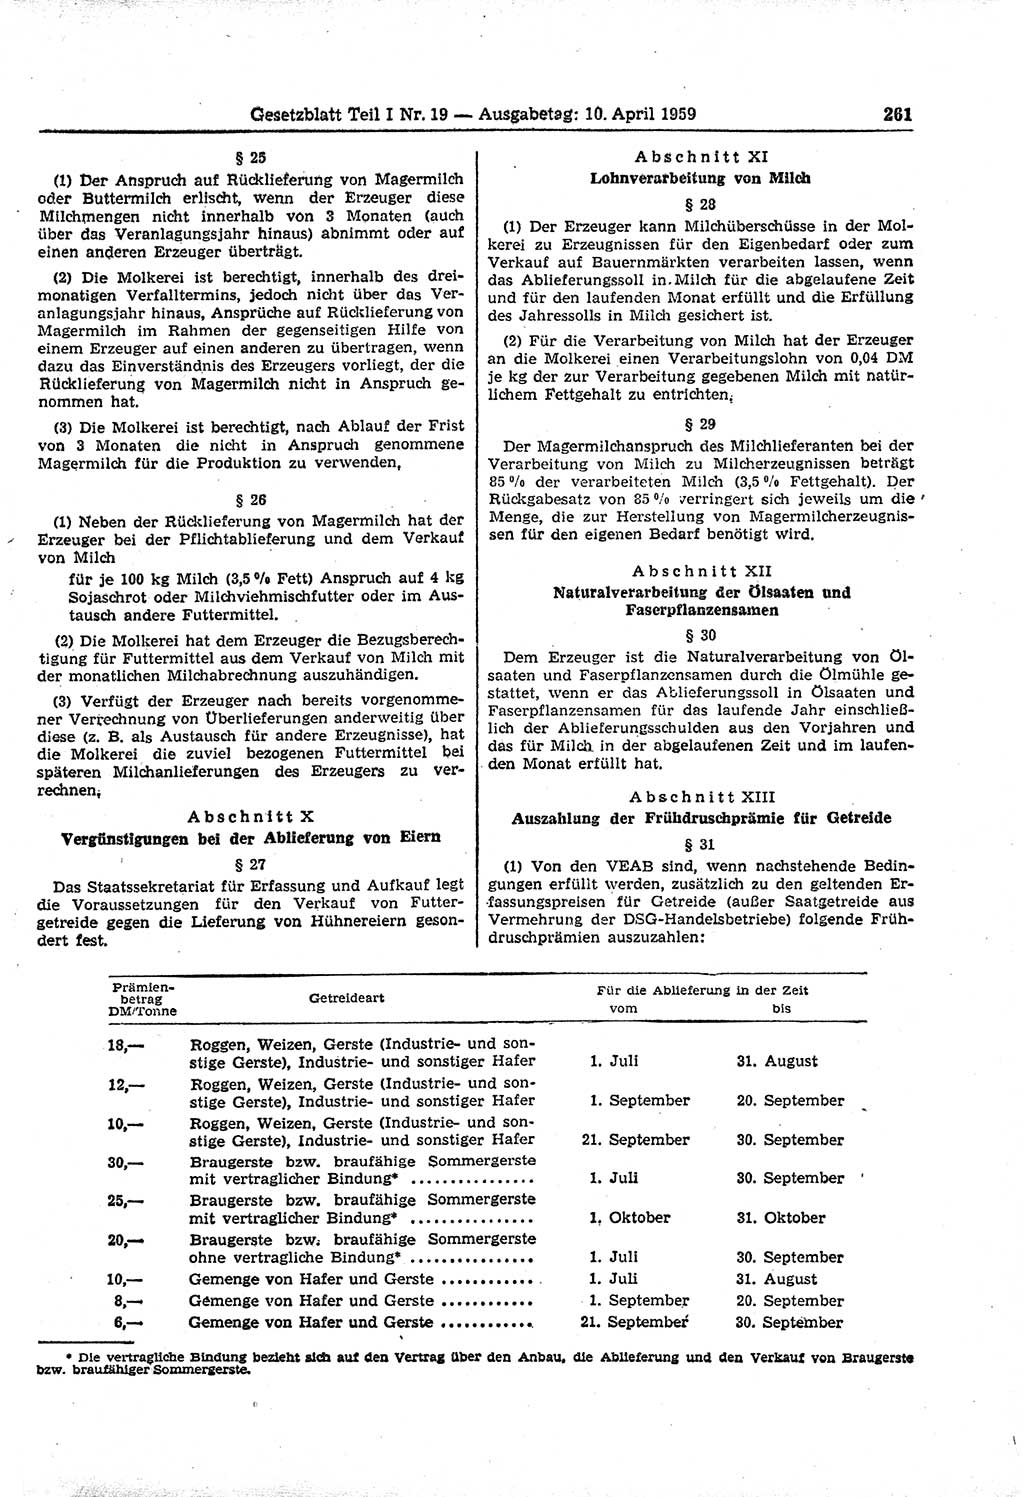 Gesetzblatt (GBl.) der Deutschen Demokratischen Republik (DDR) Teil Ⅰ 1959, Seite 261 (GBl. DDR Ⅰ 1959, S. 261)